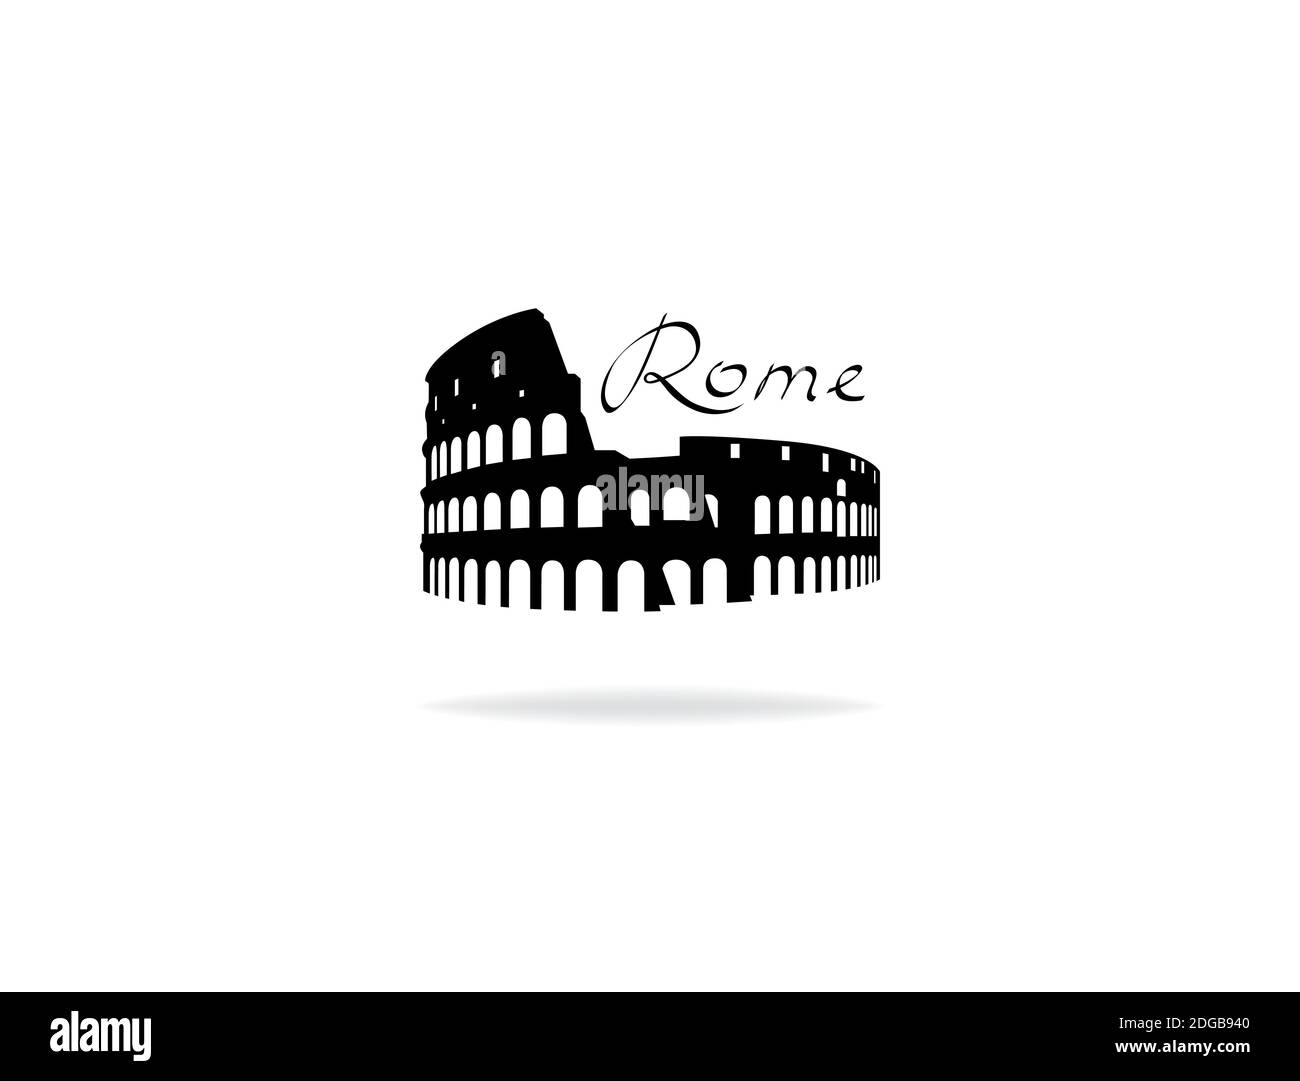 Rome voyager Landark Coliseum. Célèbre lieu italien, icône en forme de silhouette avec lettres manuscrites à Rome. Illustration de Vecteur